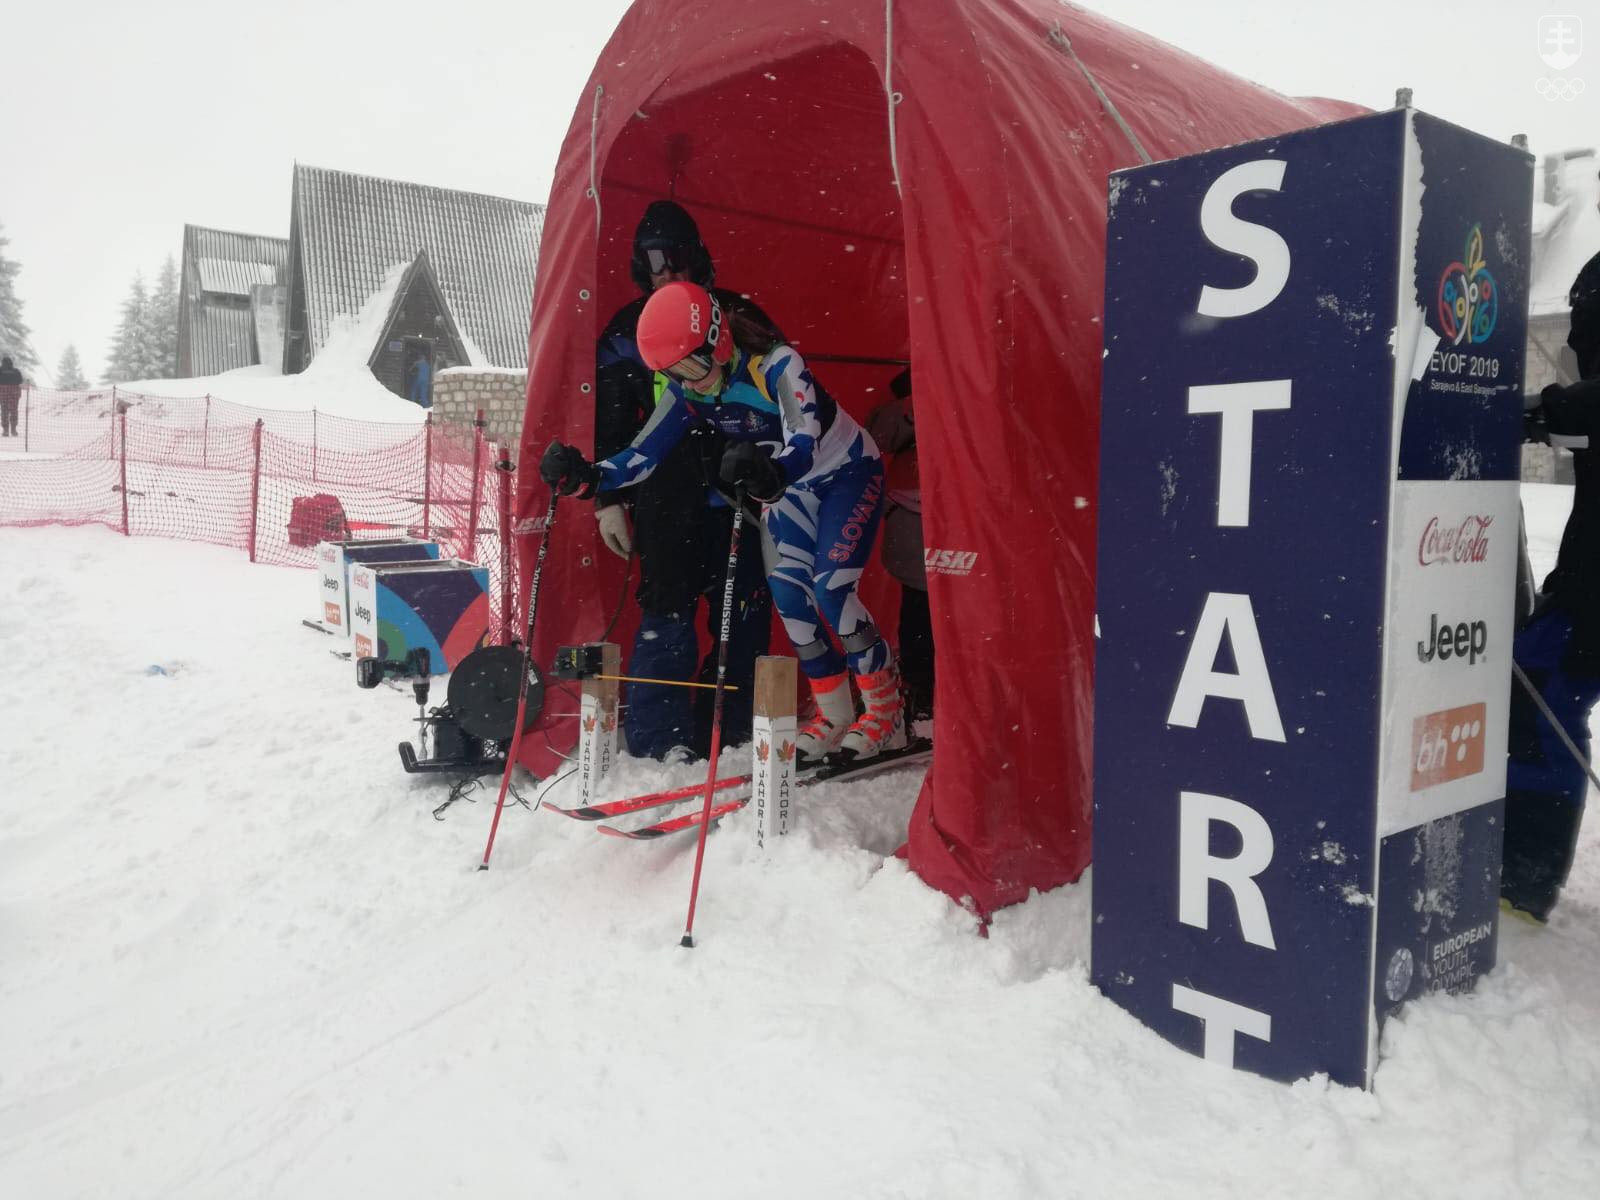 Podľa slov trénera Sanitrára dnes dievčatá výsledkami v obrovskom slalome veľmi neoslnili. FOTO: : SOŠV/Andrej Galica